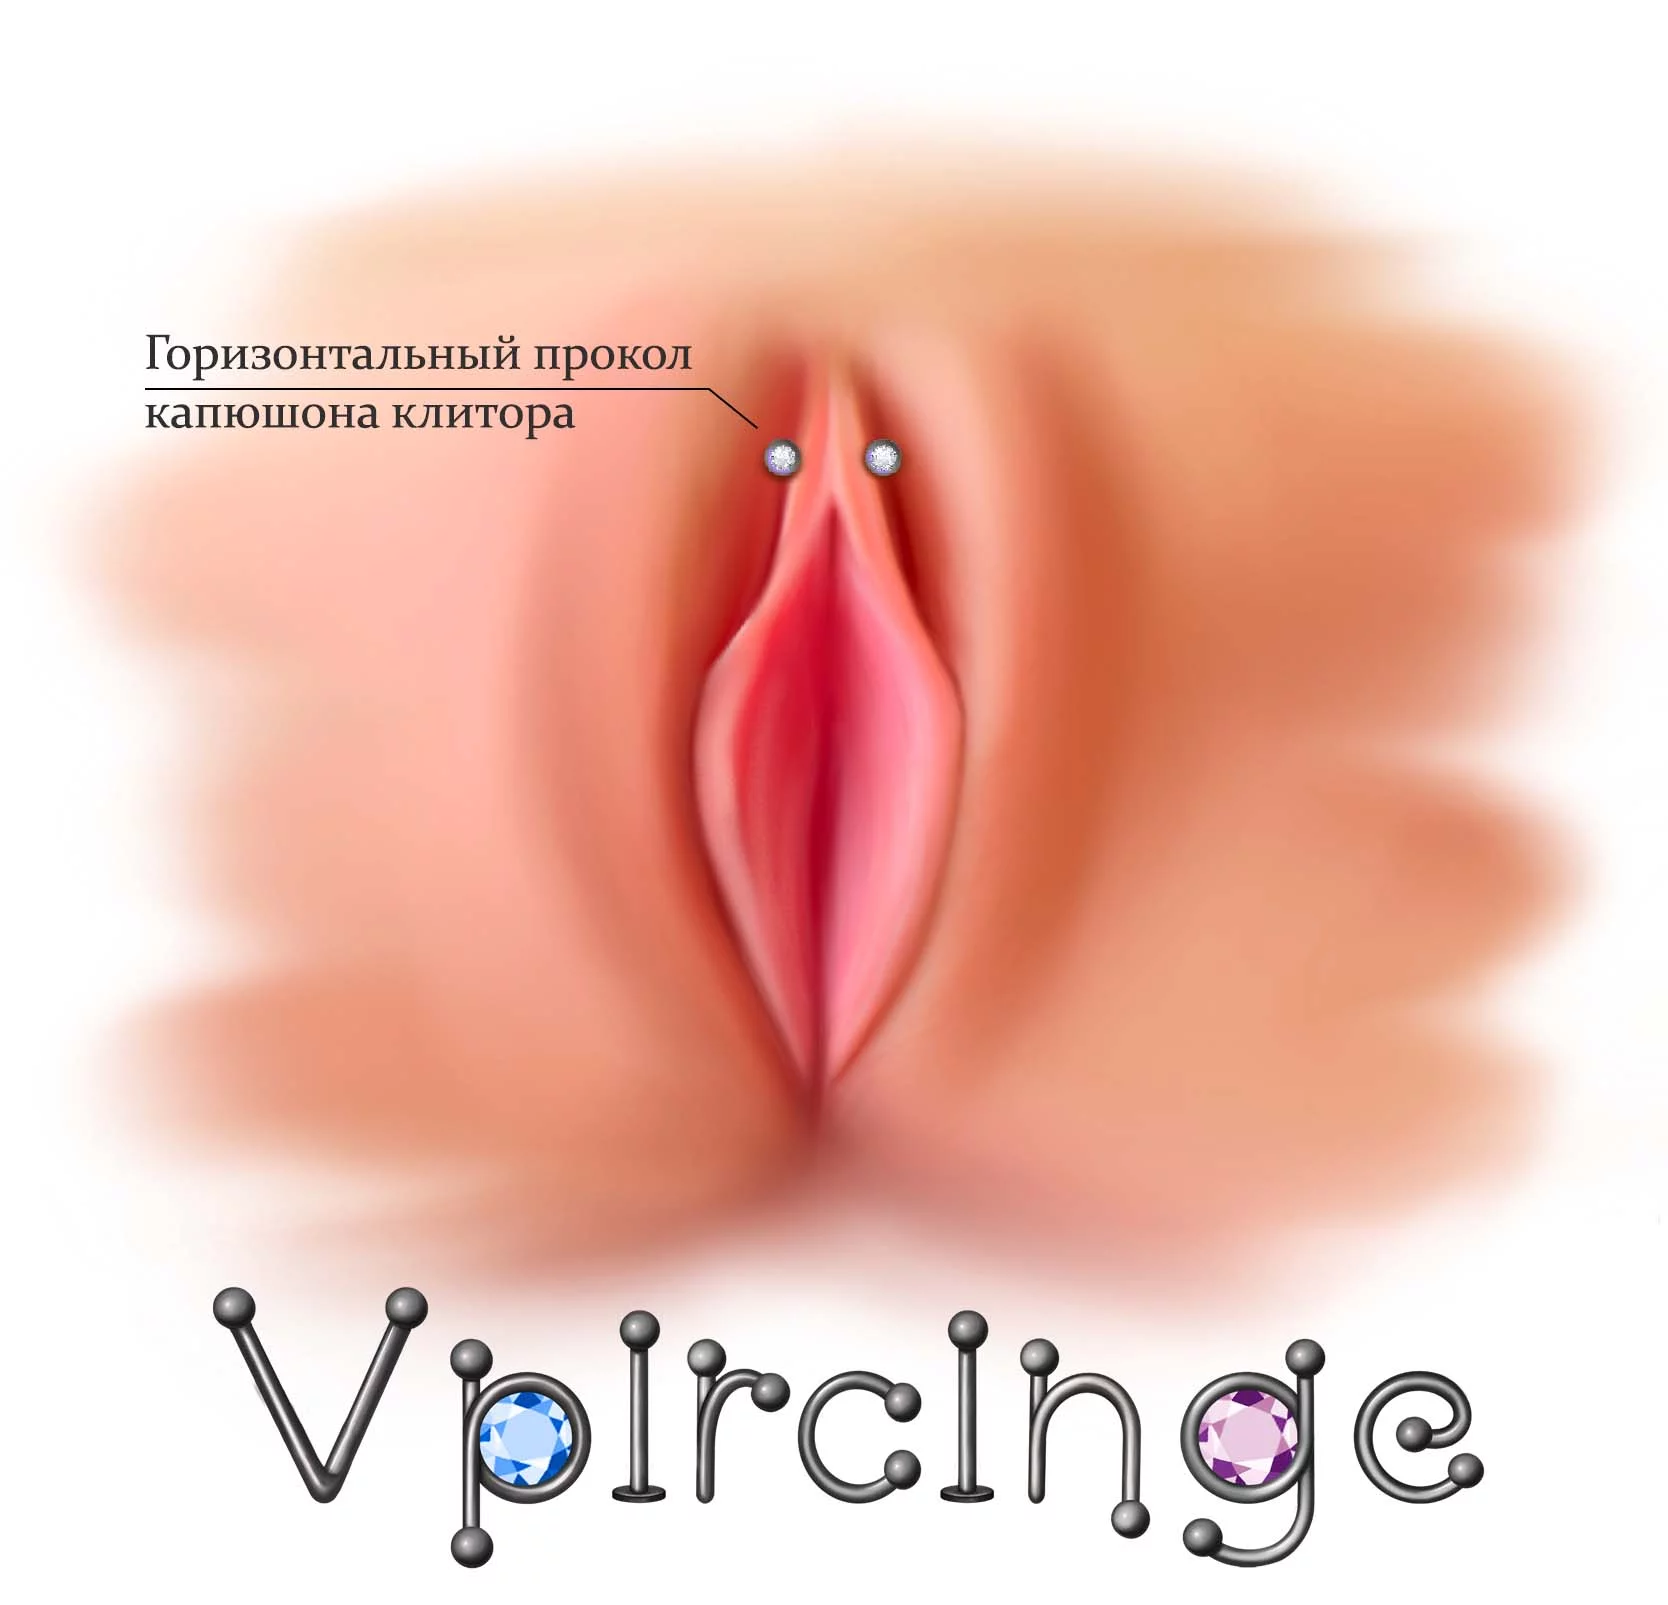 Эротика виды женских половых органов (61 фото) - порно и фото голых на поддоноптом.рф